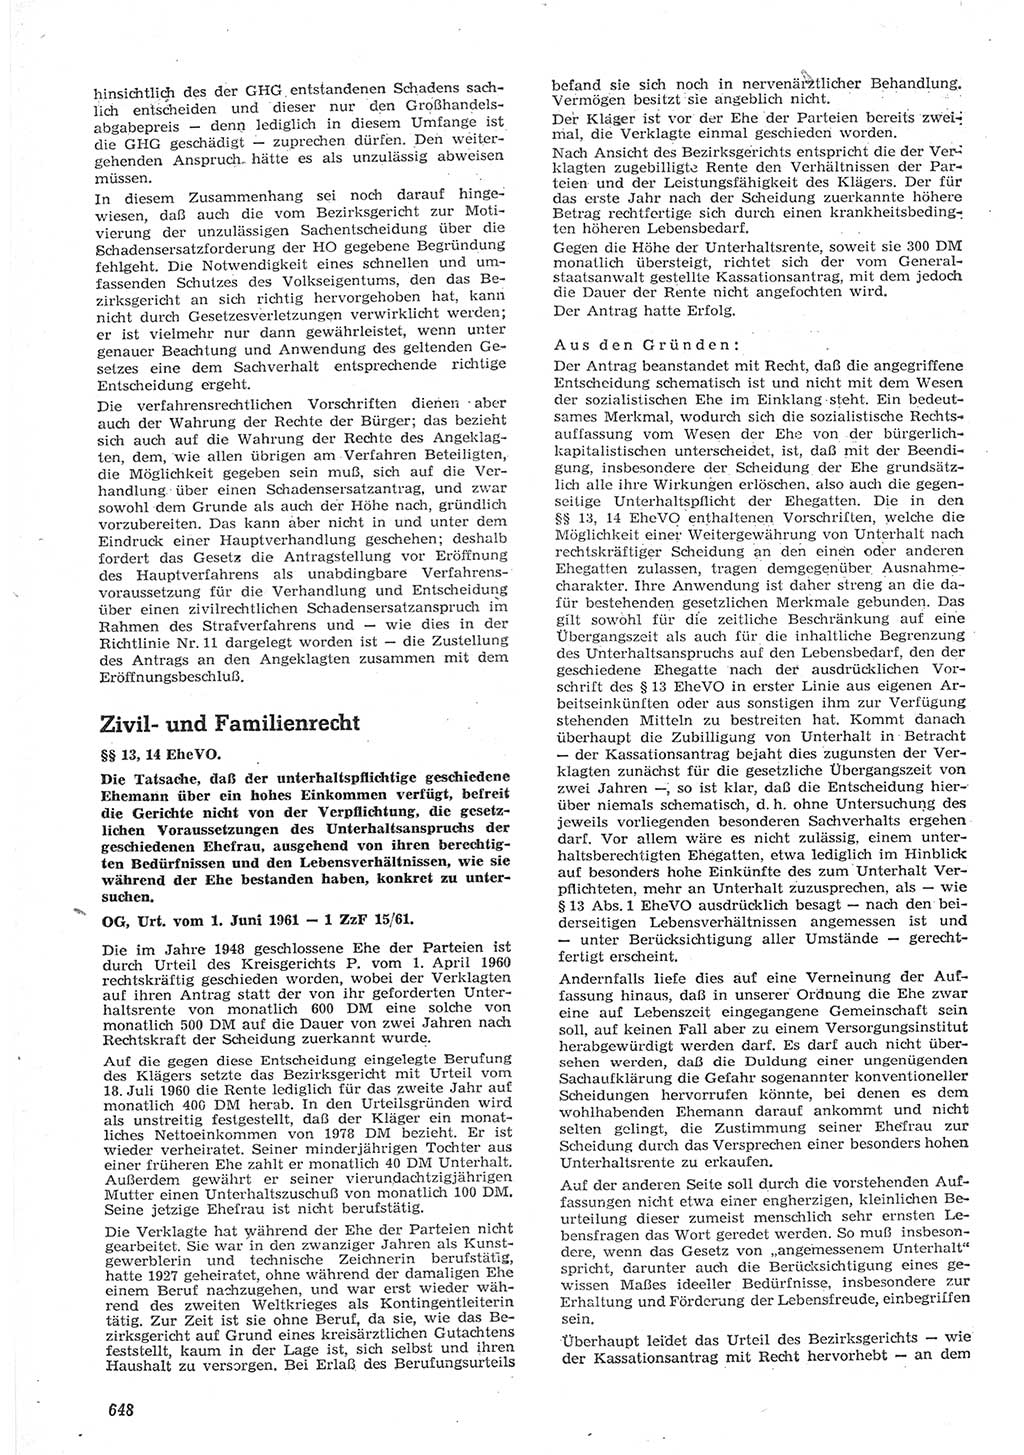 Neue Justiz (NJ), Zeitschrift für Recht und Rechtswissenschaft [Deutsche Demokratische Republik (DDR)], 15. Jahrgang 1961, Seite 648 (NJ DDR 1961, S. 648)